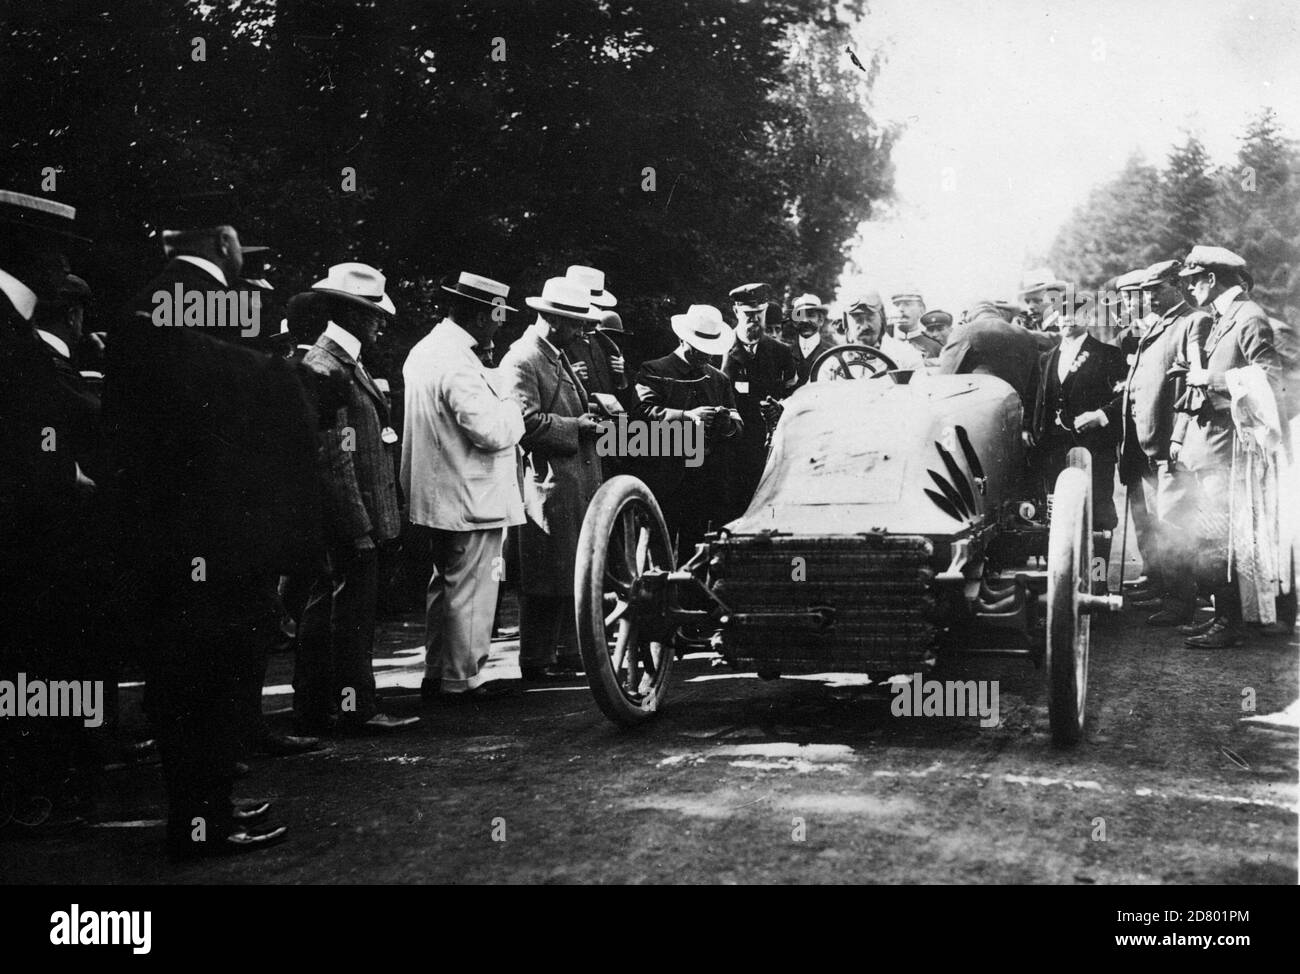 Pipe, Hautvast in 1904 Gordon Bennett Cup at Homberg Stock Photo